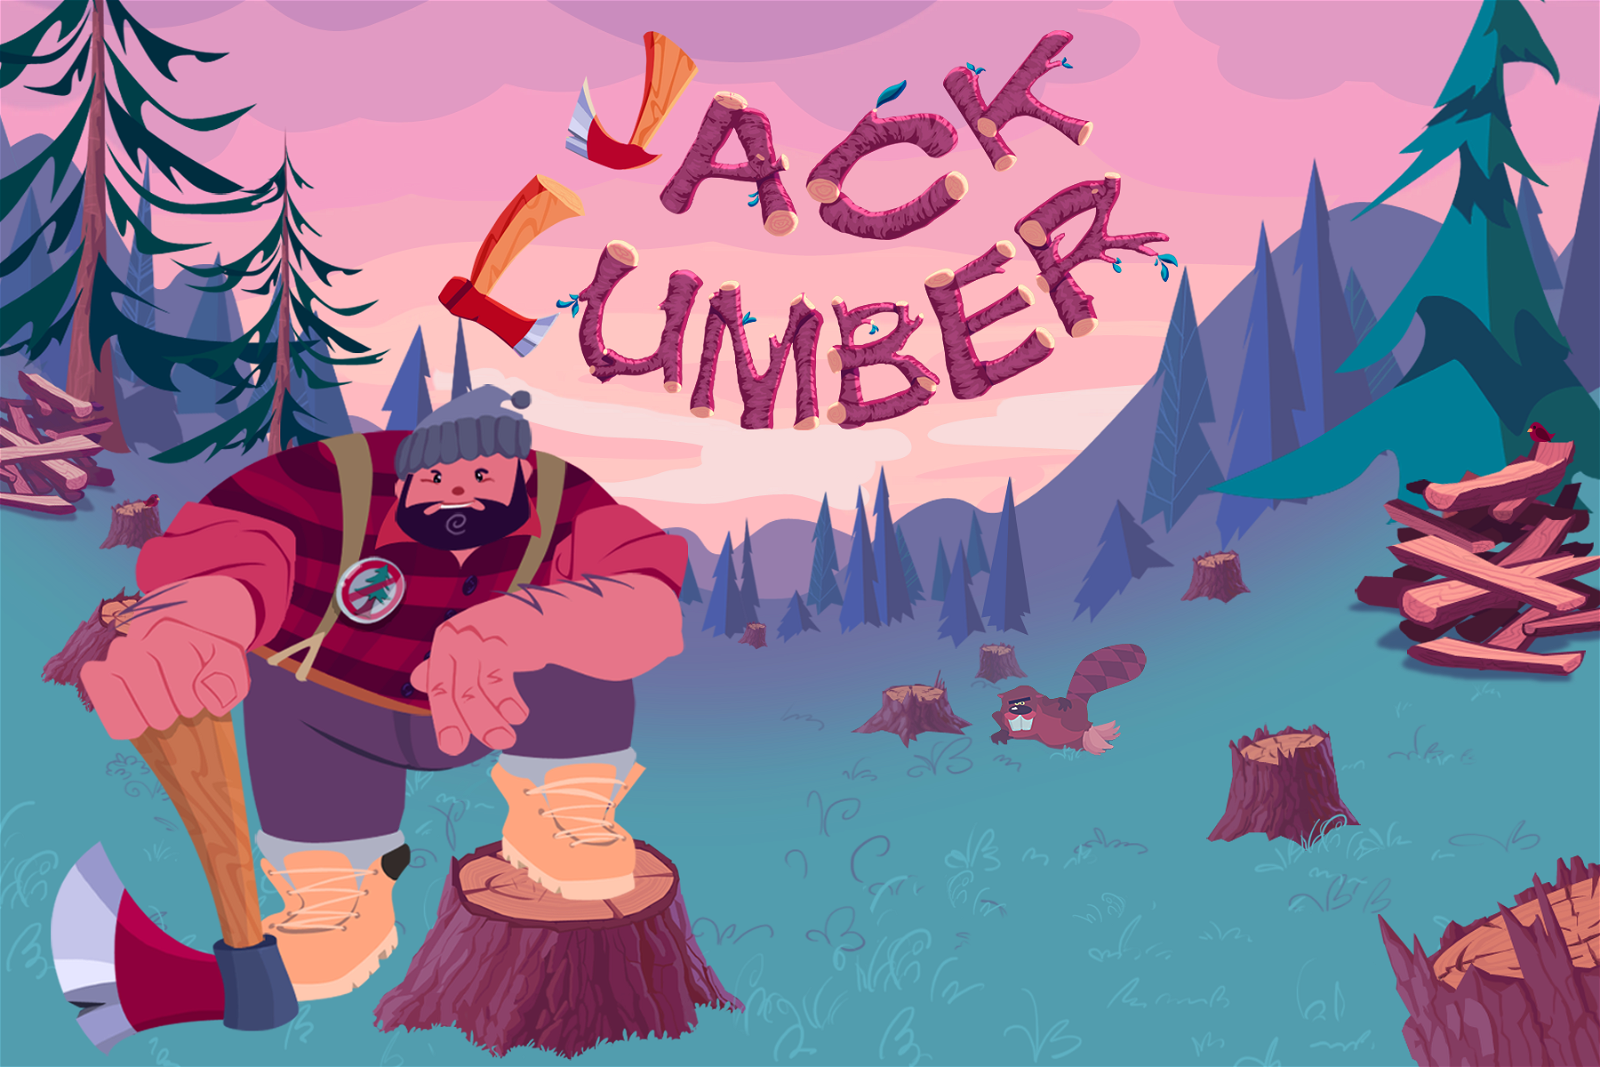 Image of Jack Lumber